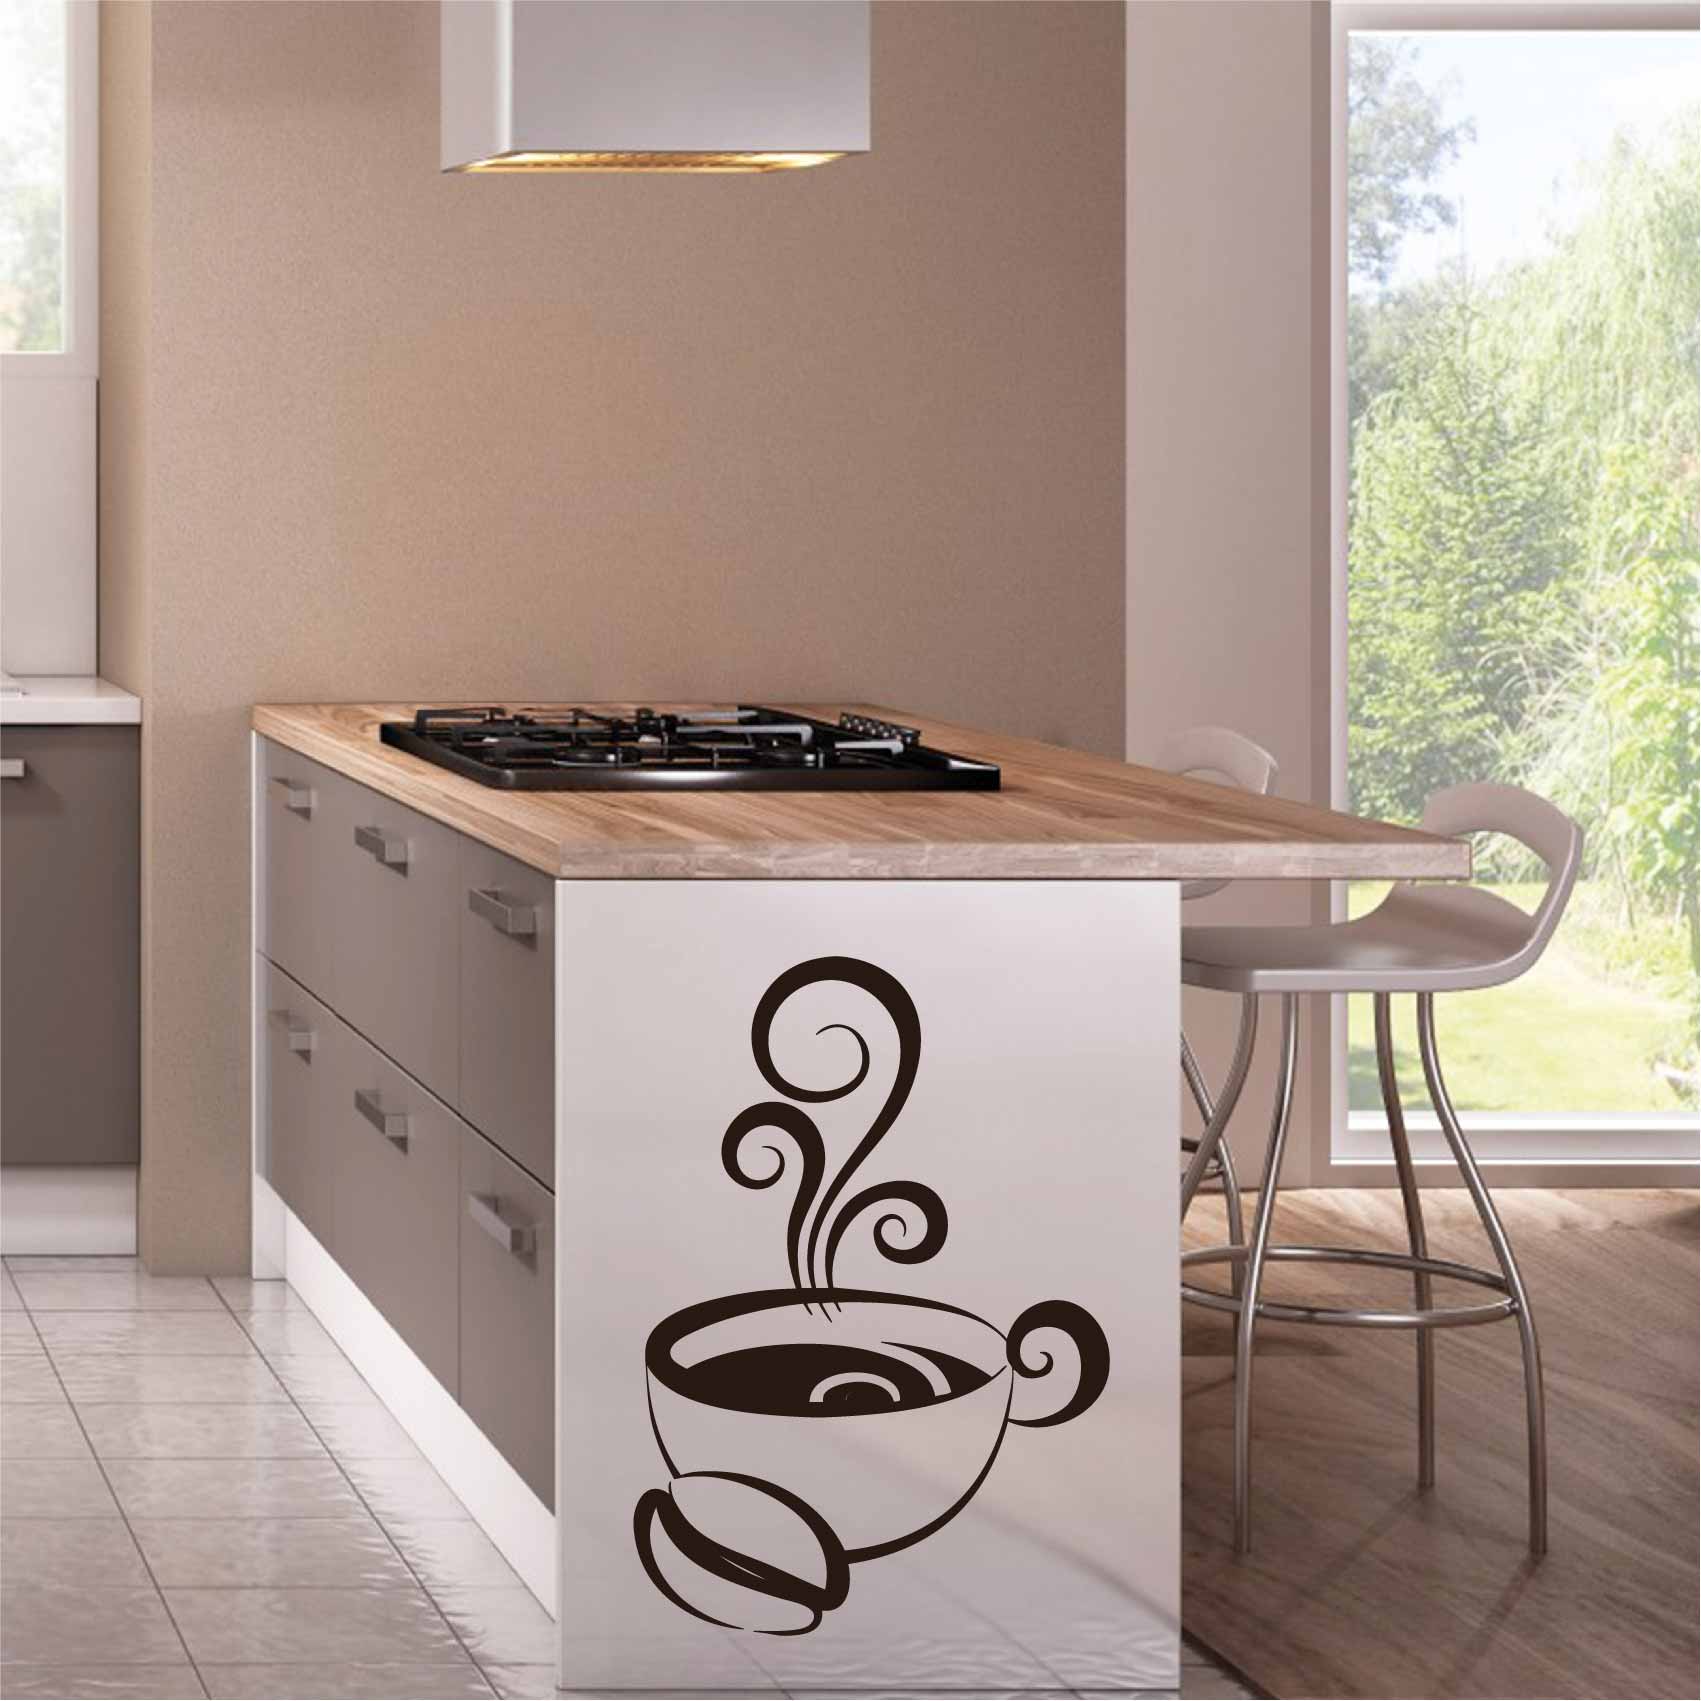 stickers-muraux-cuisine-tasse-café-ref28cafe-autocollant-muraux-coffee-sticker-mural-cuisine-cafe-deco-salon-table